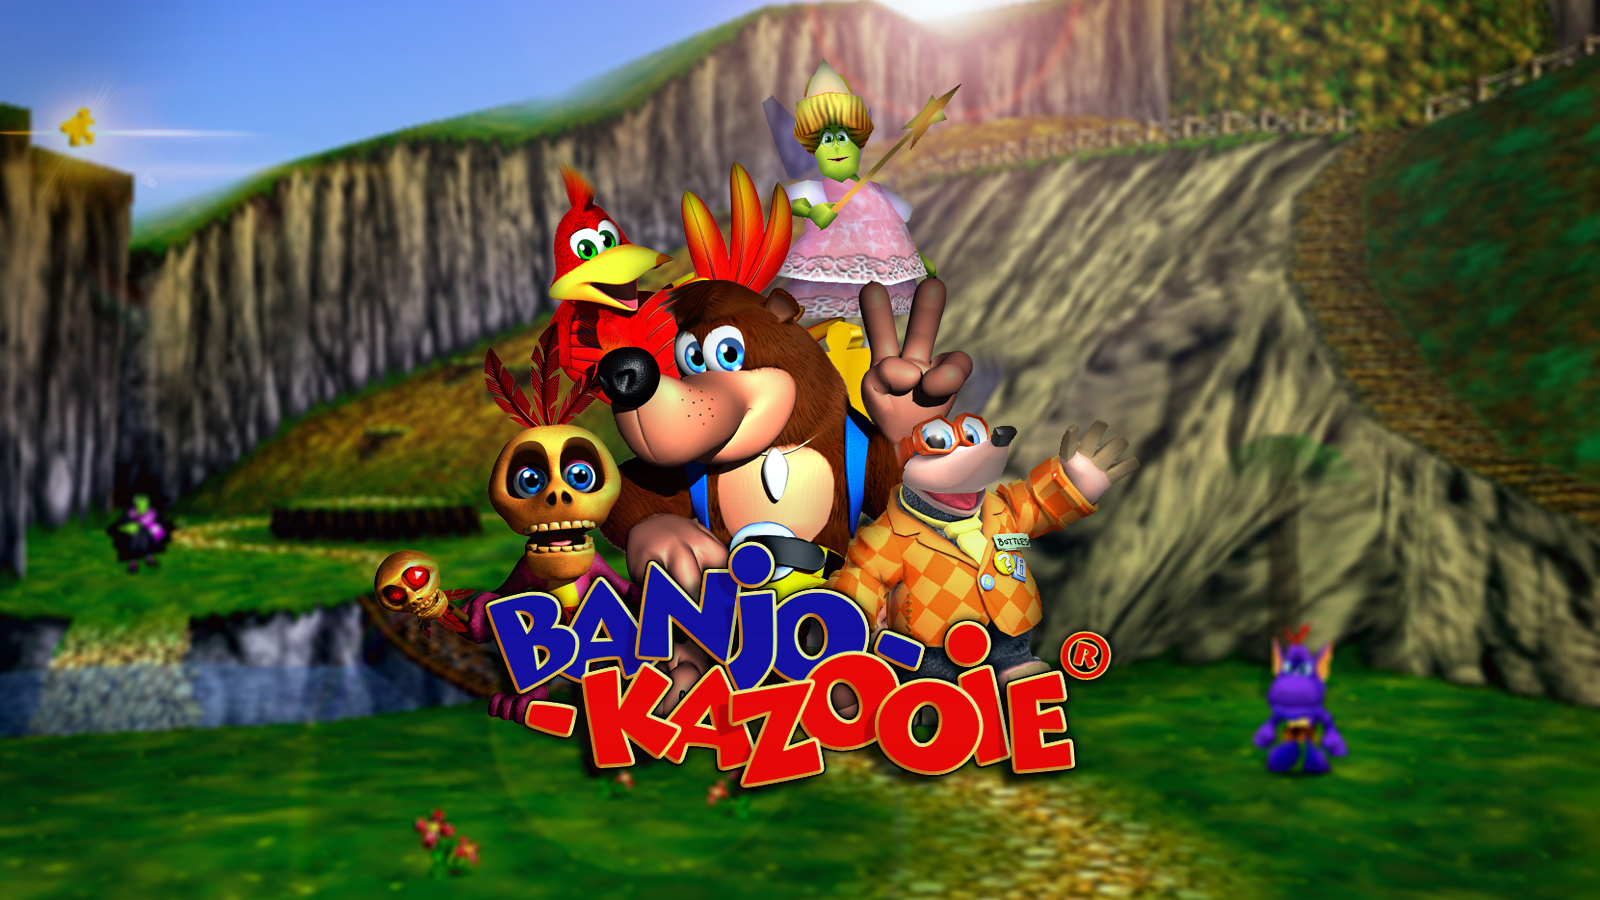 Why Microsoft Won't Release Banjo-Kazooie 3